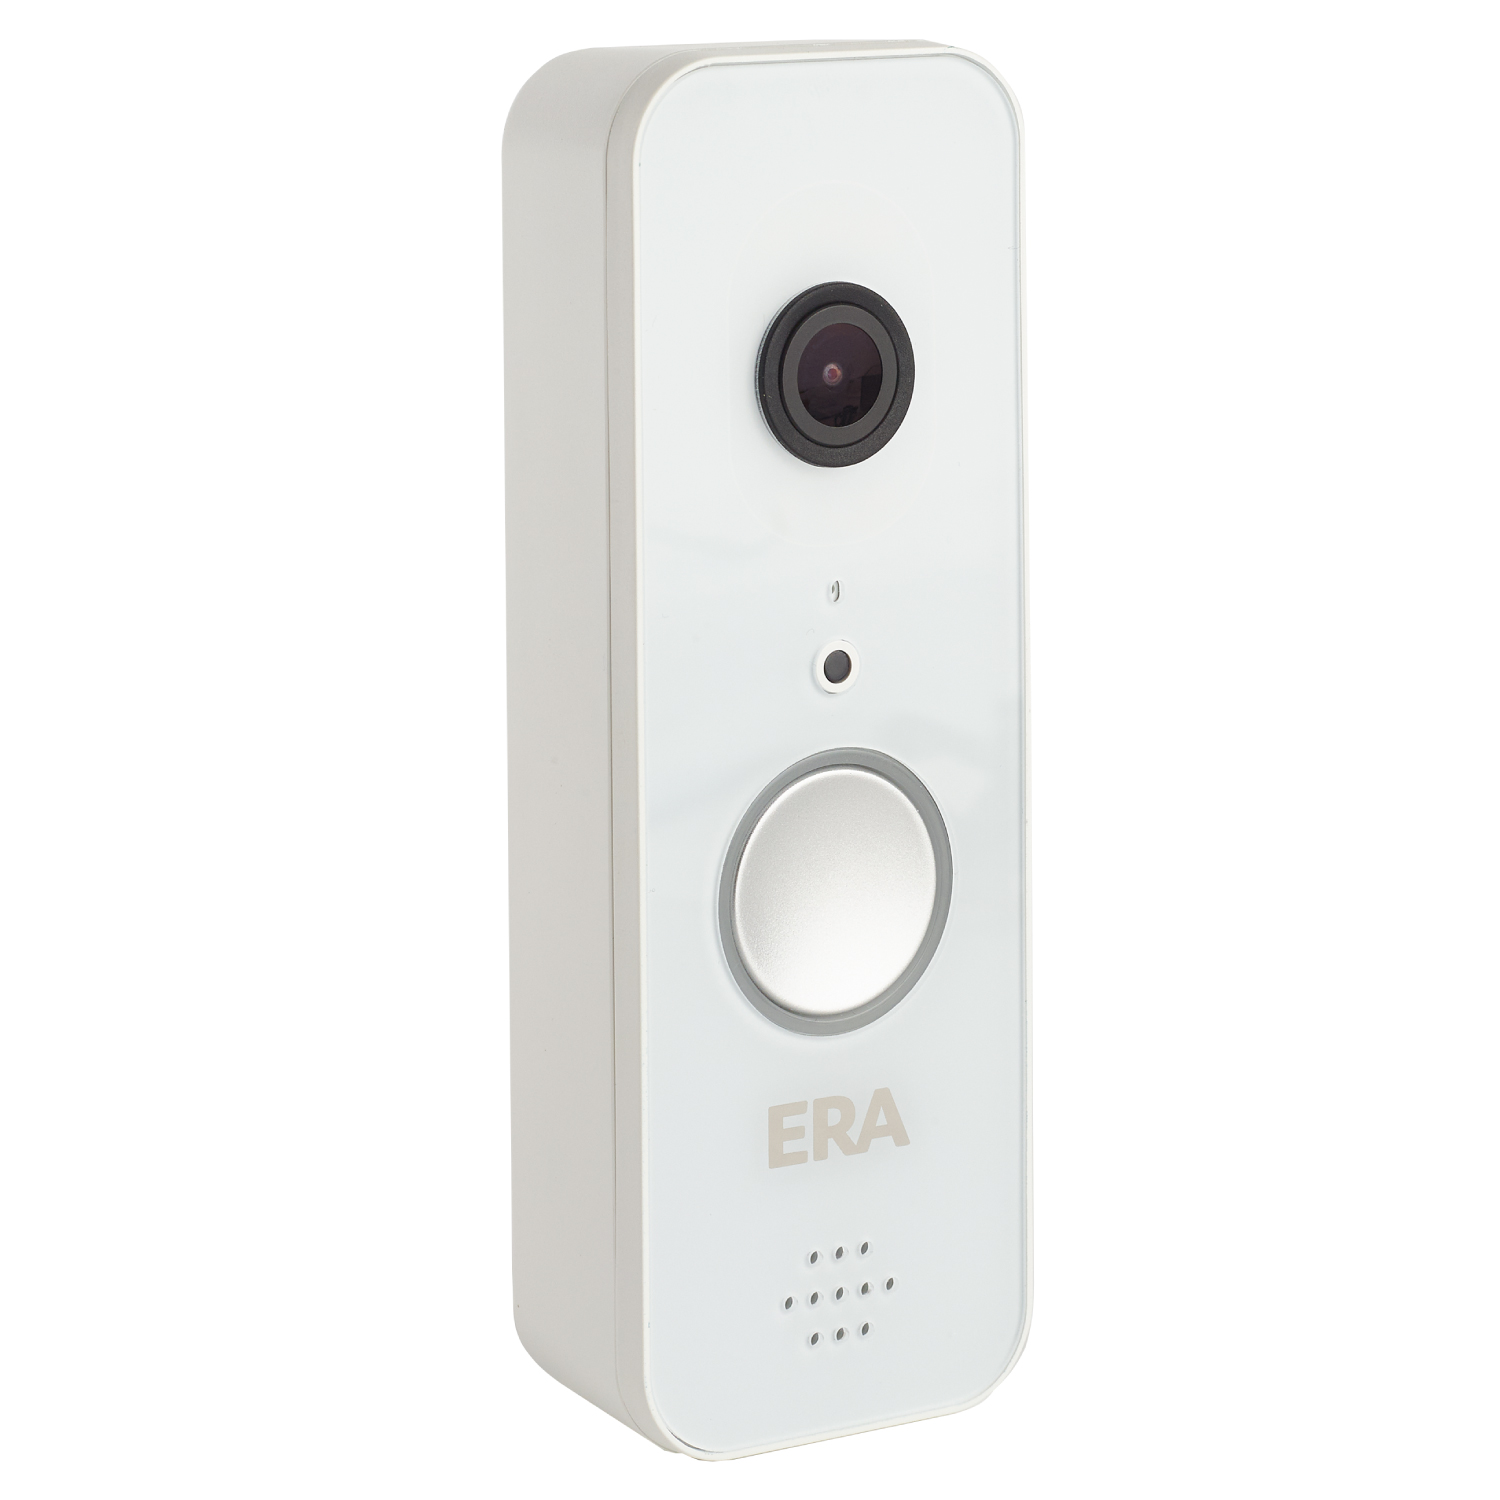 ERA Protect Smart Video Doorbell